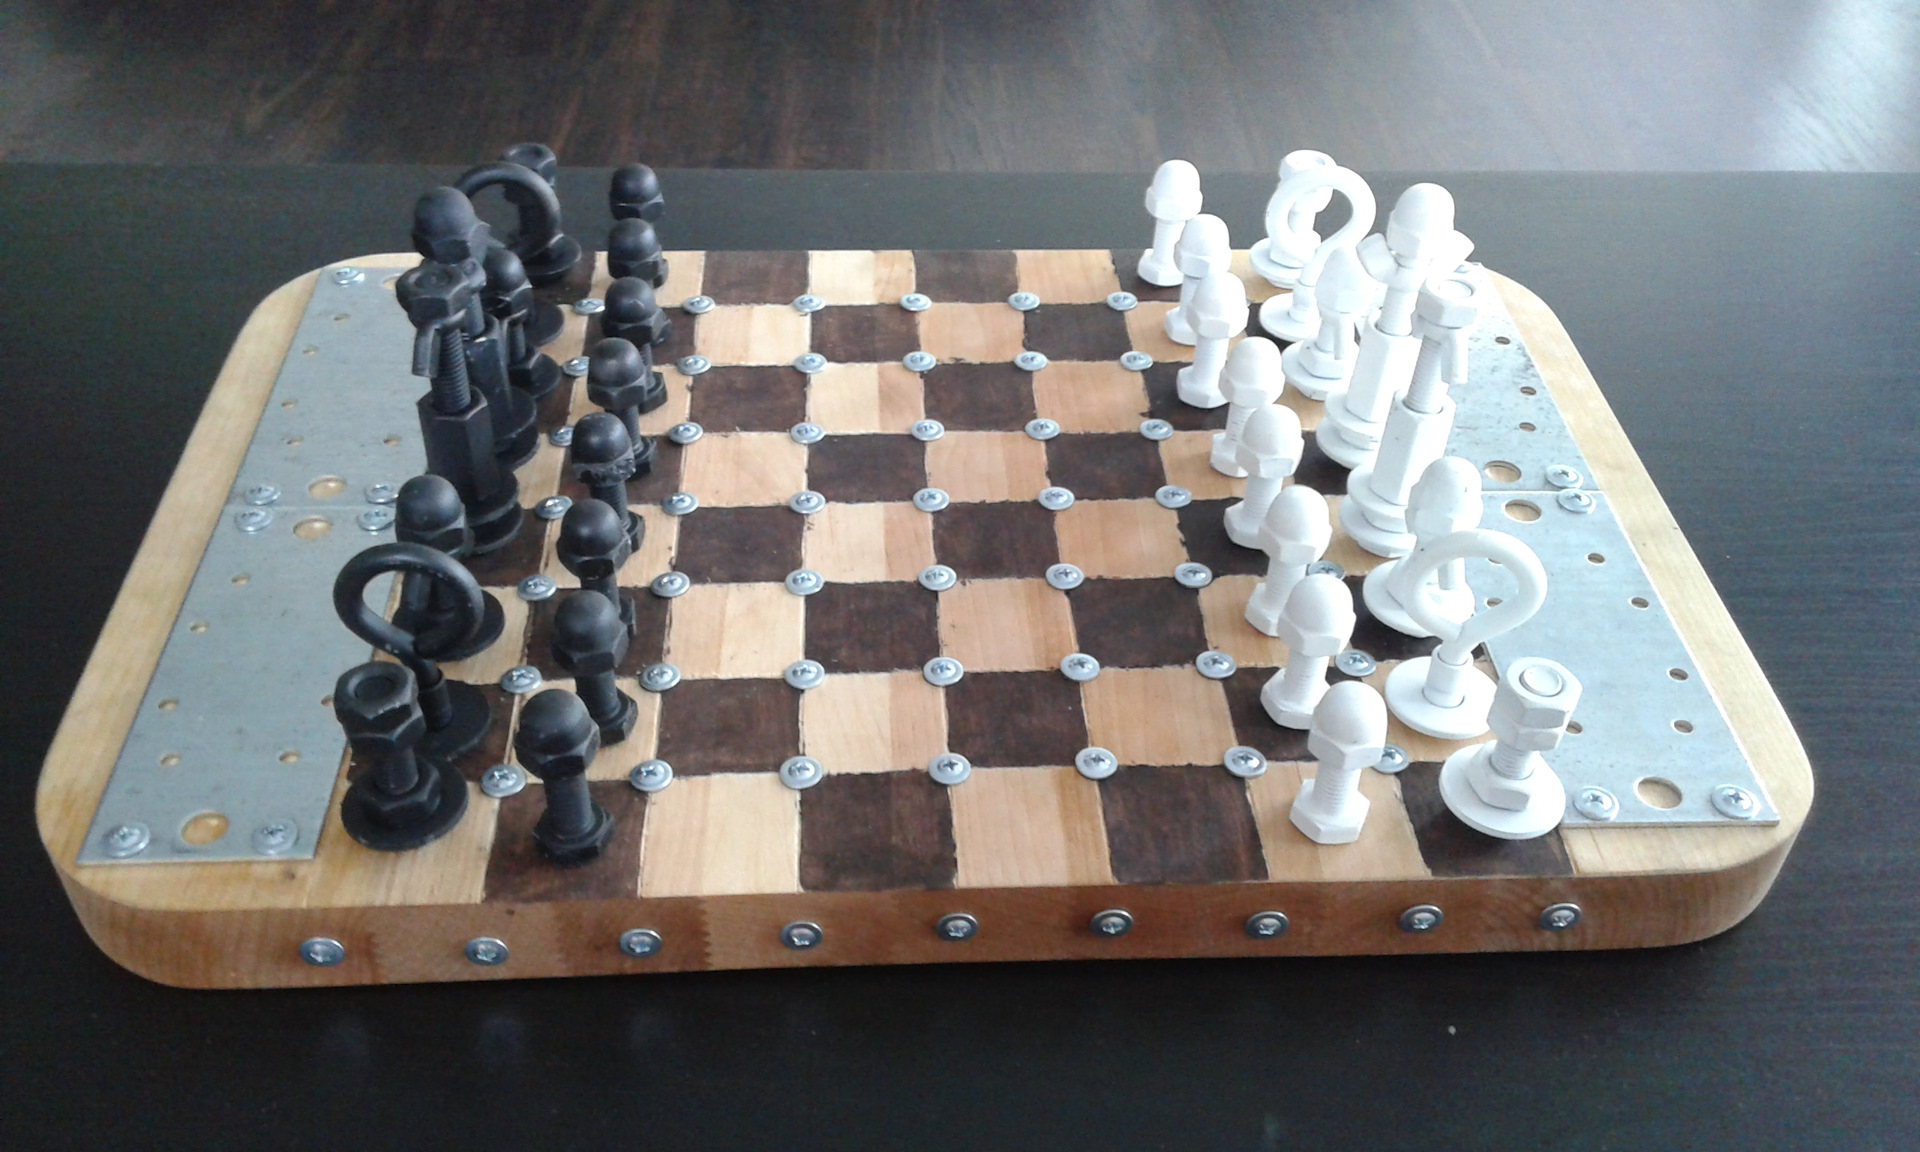 самодельные шахматы с недоигранной партией фигуры из гаек и болтов ввинчены в доску